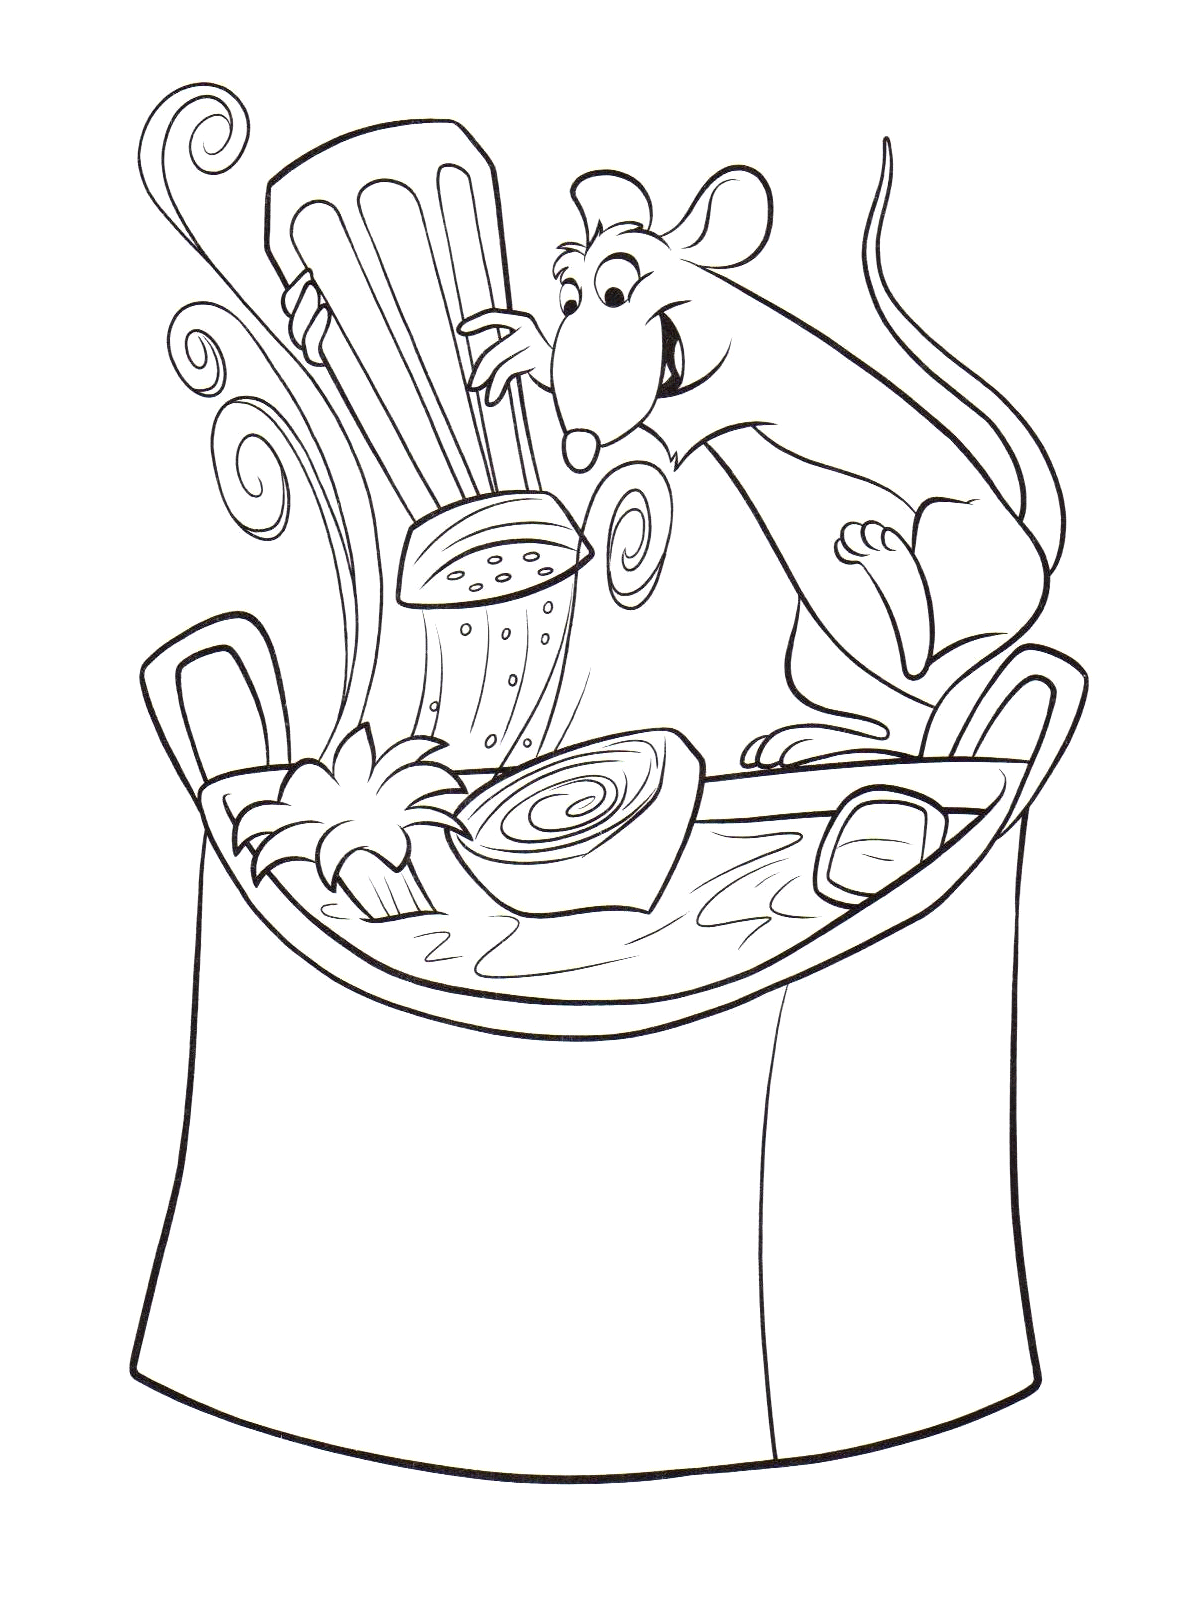 Tranh tô màu con chuột đang nấu ăn